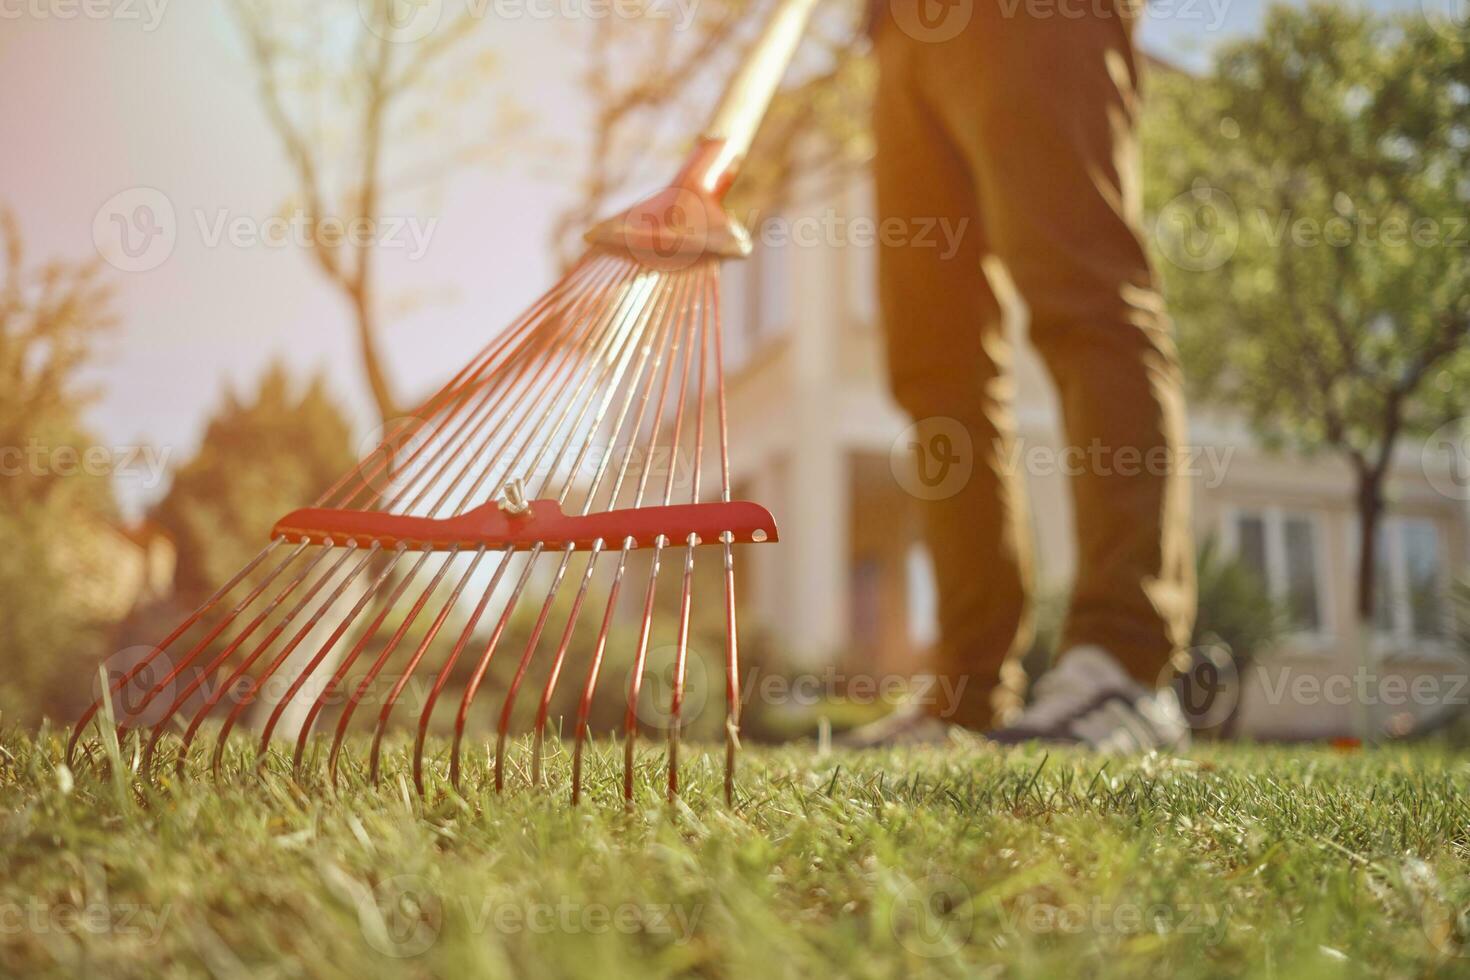 inconnue Jeune homme dans décontractée vêtements est en utilisant rouge jardin râteau sur une pelouse de le sien cour. utile outil de moderne jardinier. ensoleillé journée. proche en haut photo